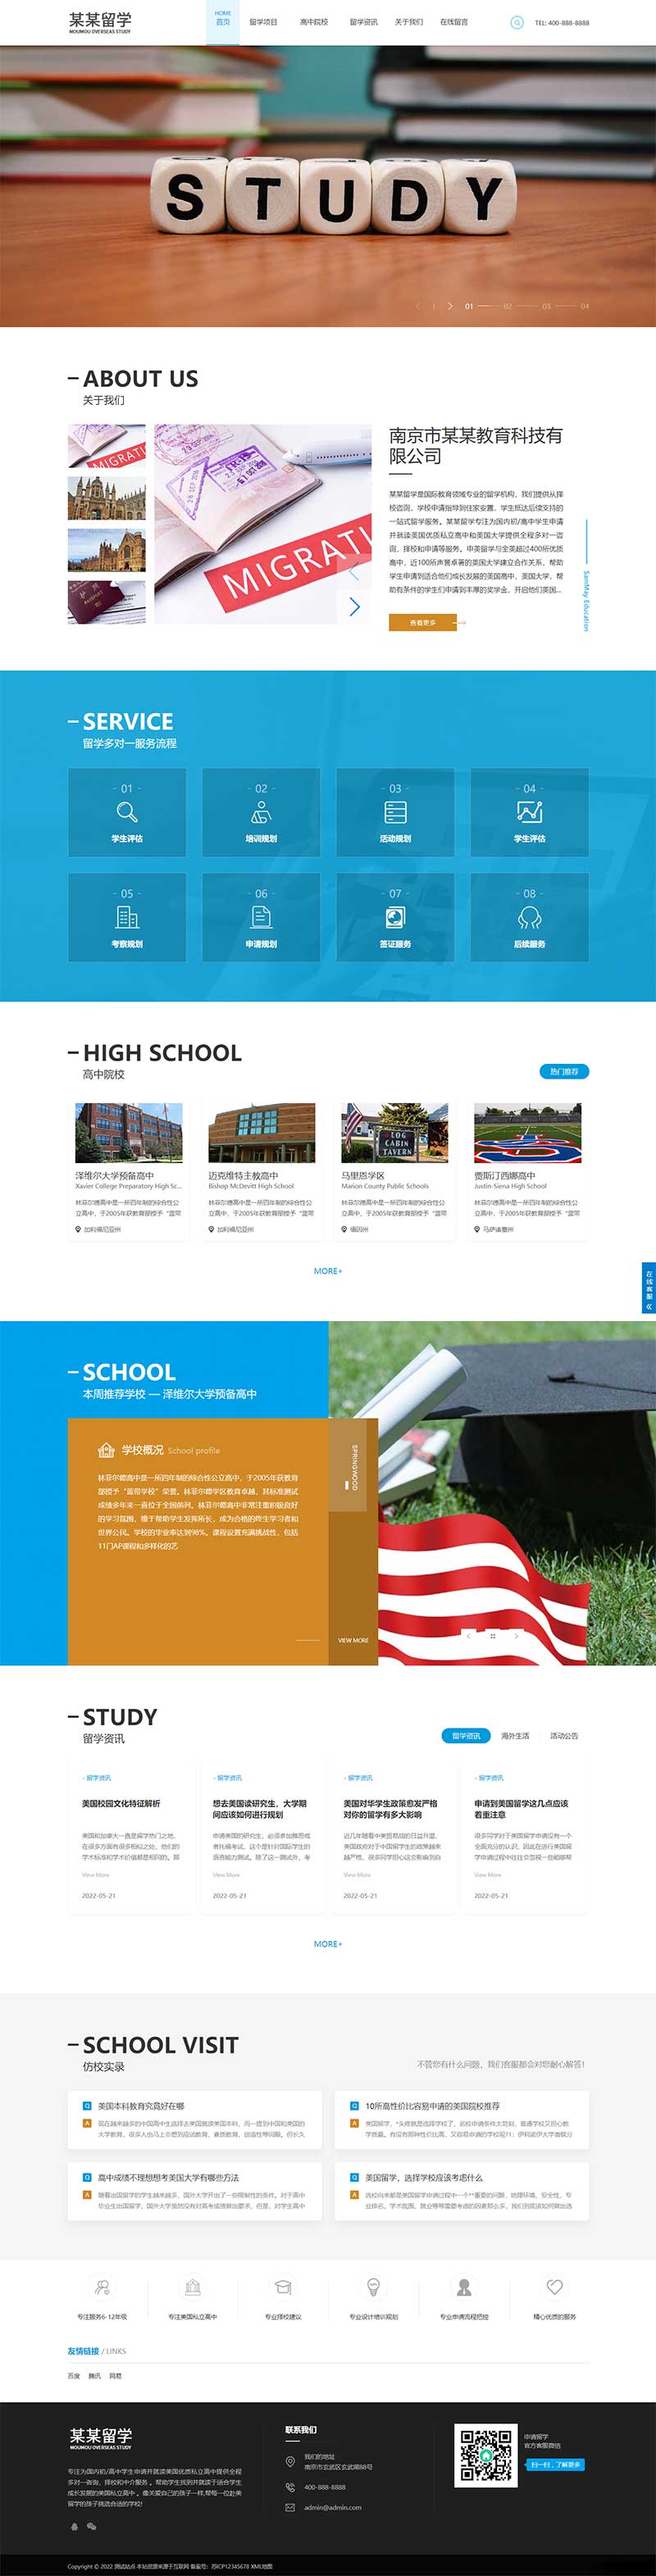 (自适应手机端)html5响应式精美大气留学教育服务公司网站源码电脑端展示图片